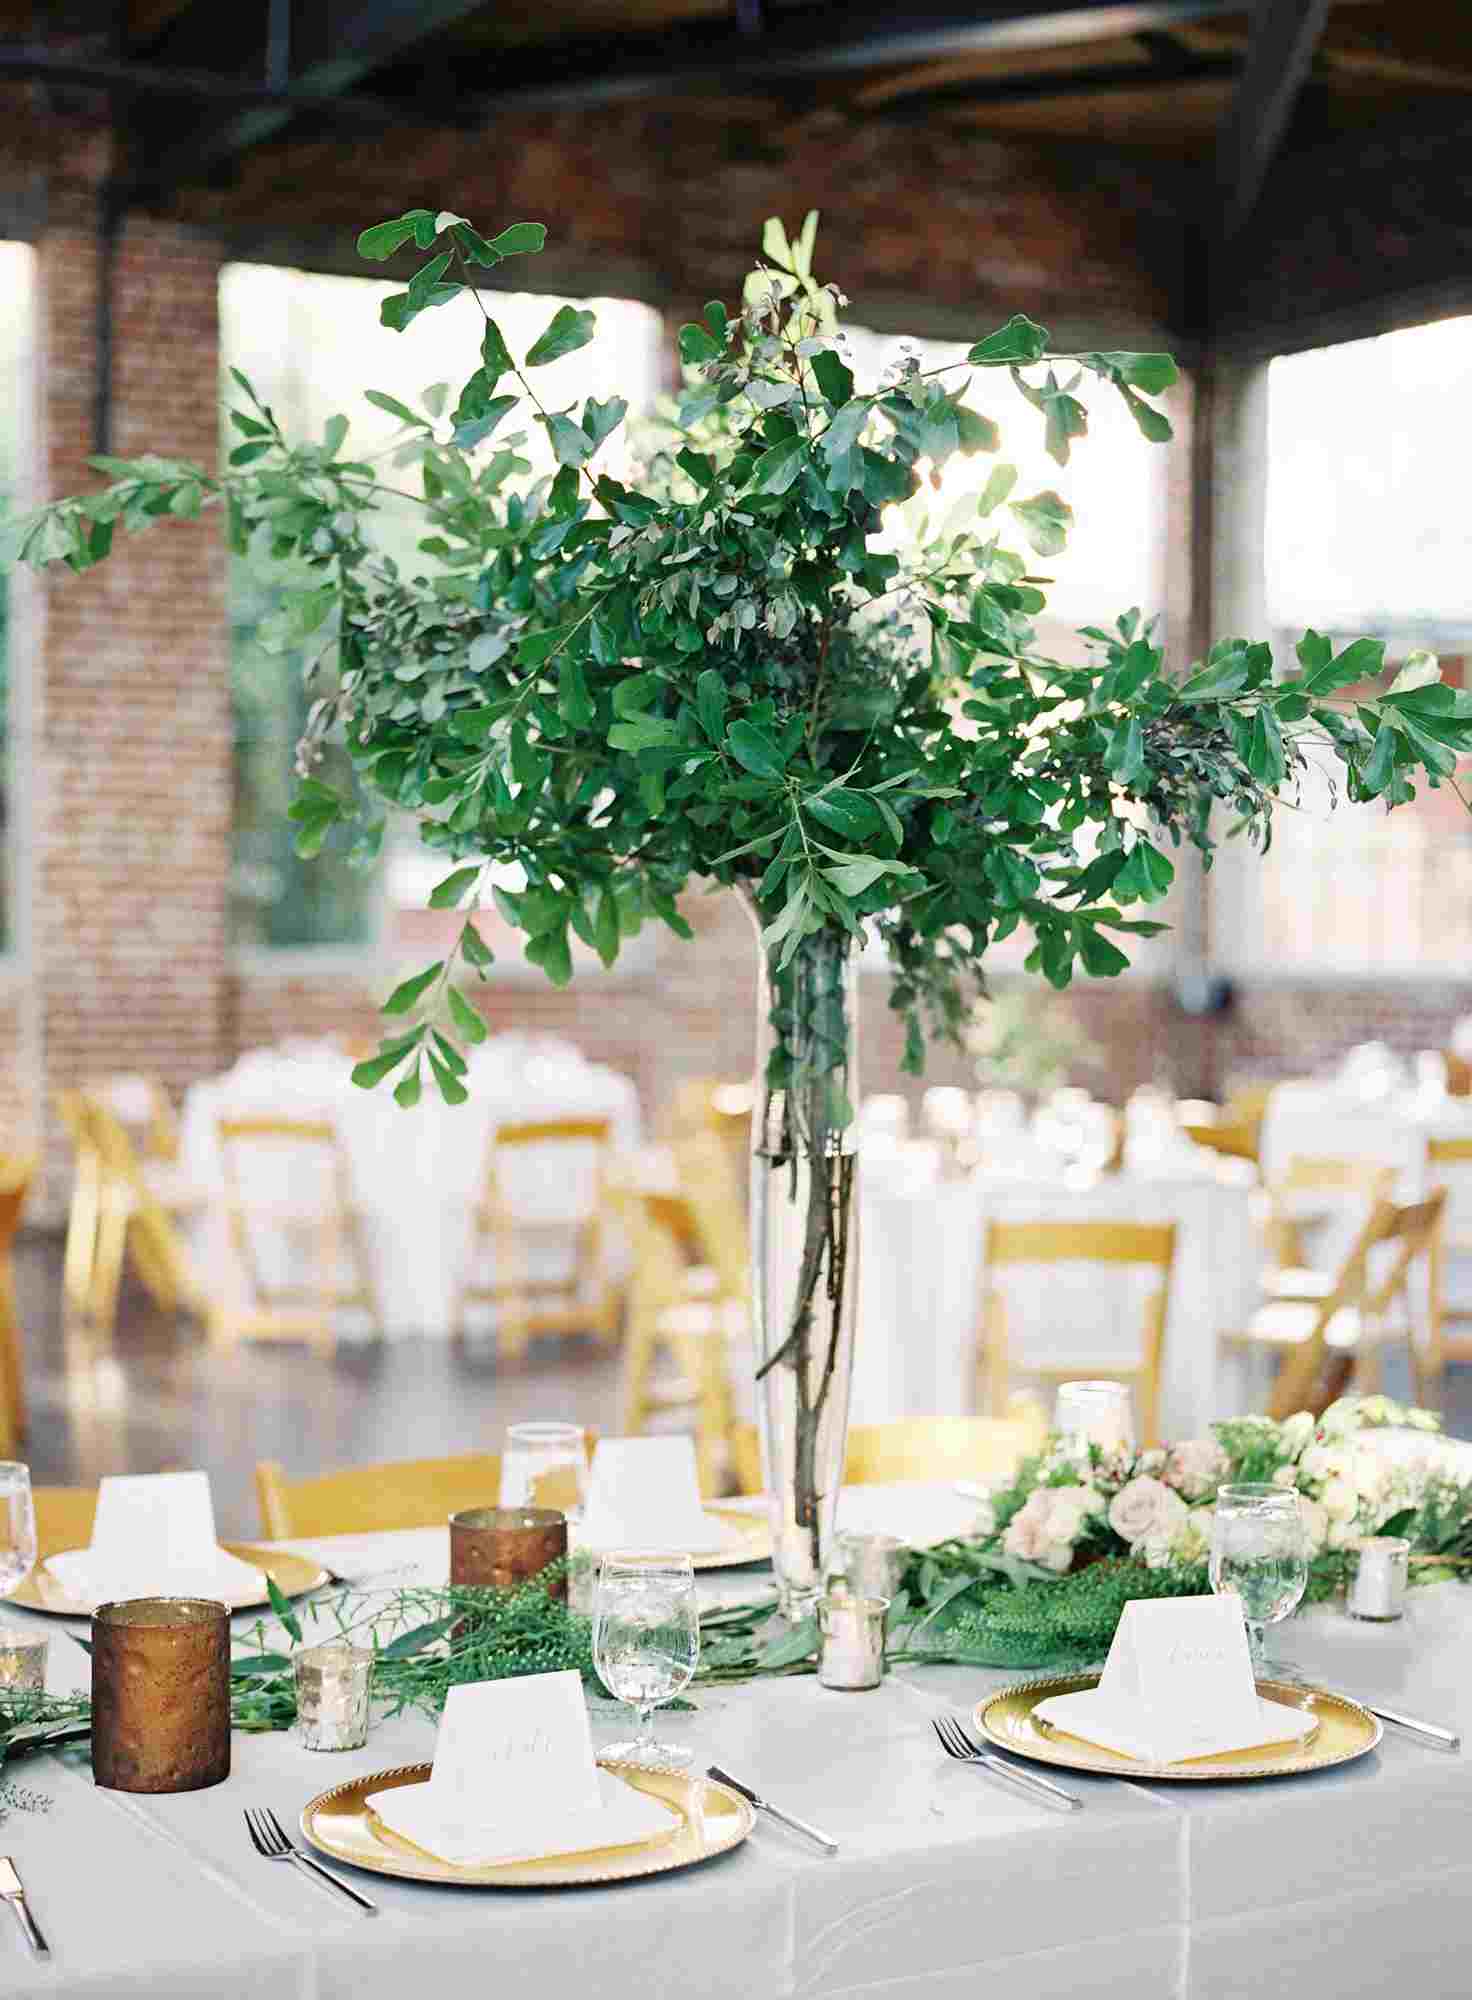 Greenery Hochzeit Tischdeko ideen Laub Blumenstrauß Sommer Hochzeit Trends